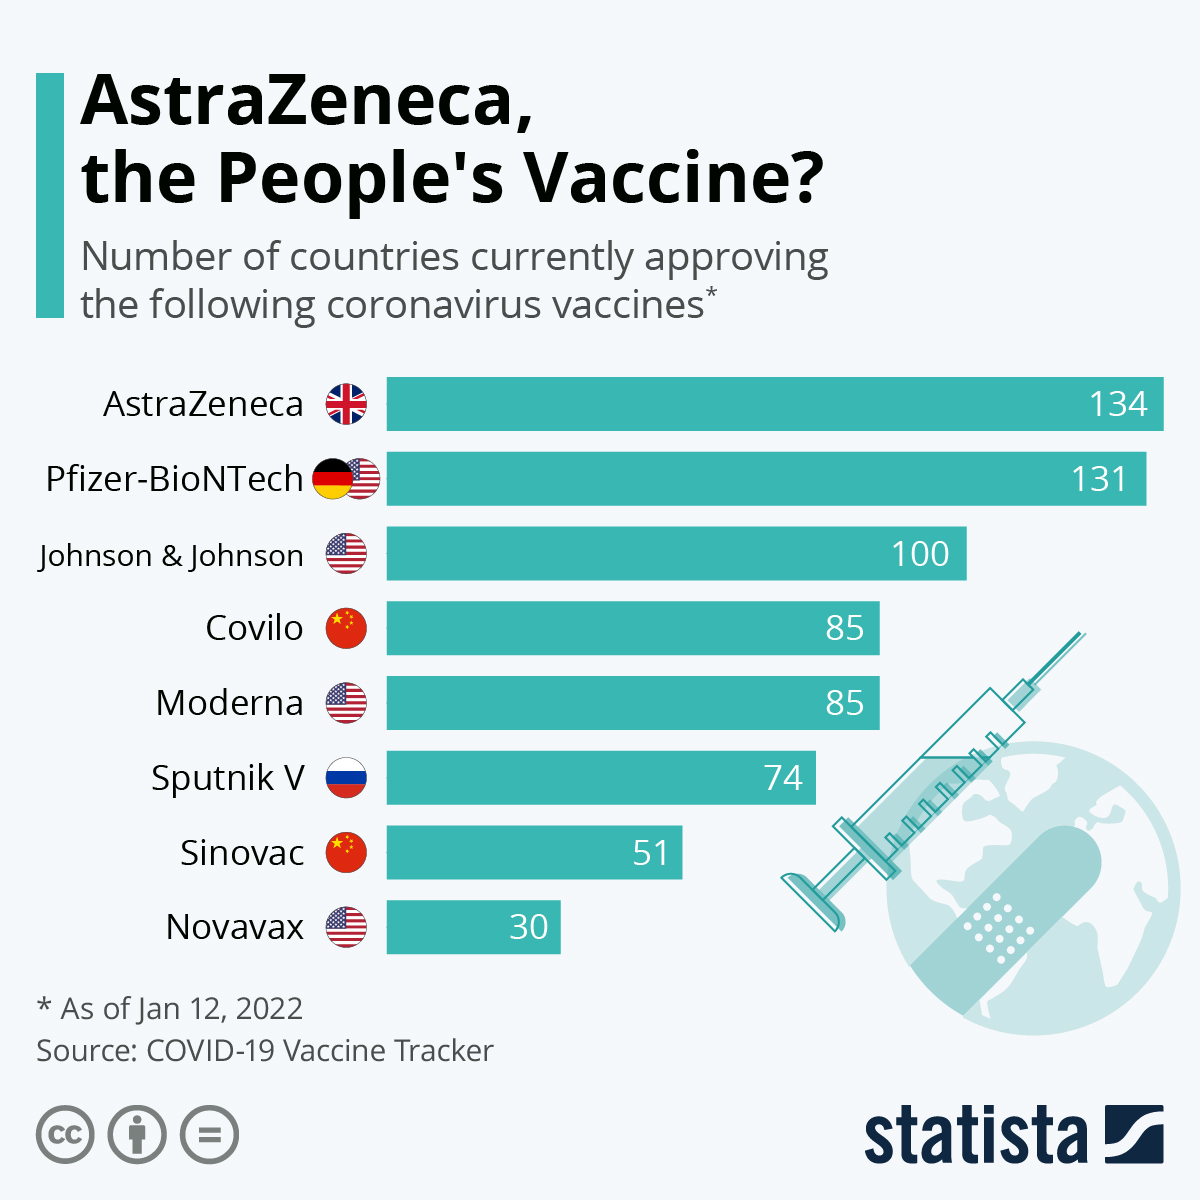 AstraZeneca, the People's Vaccine?